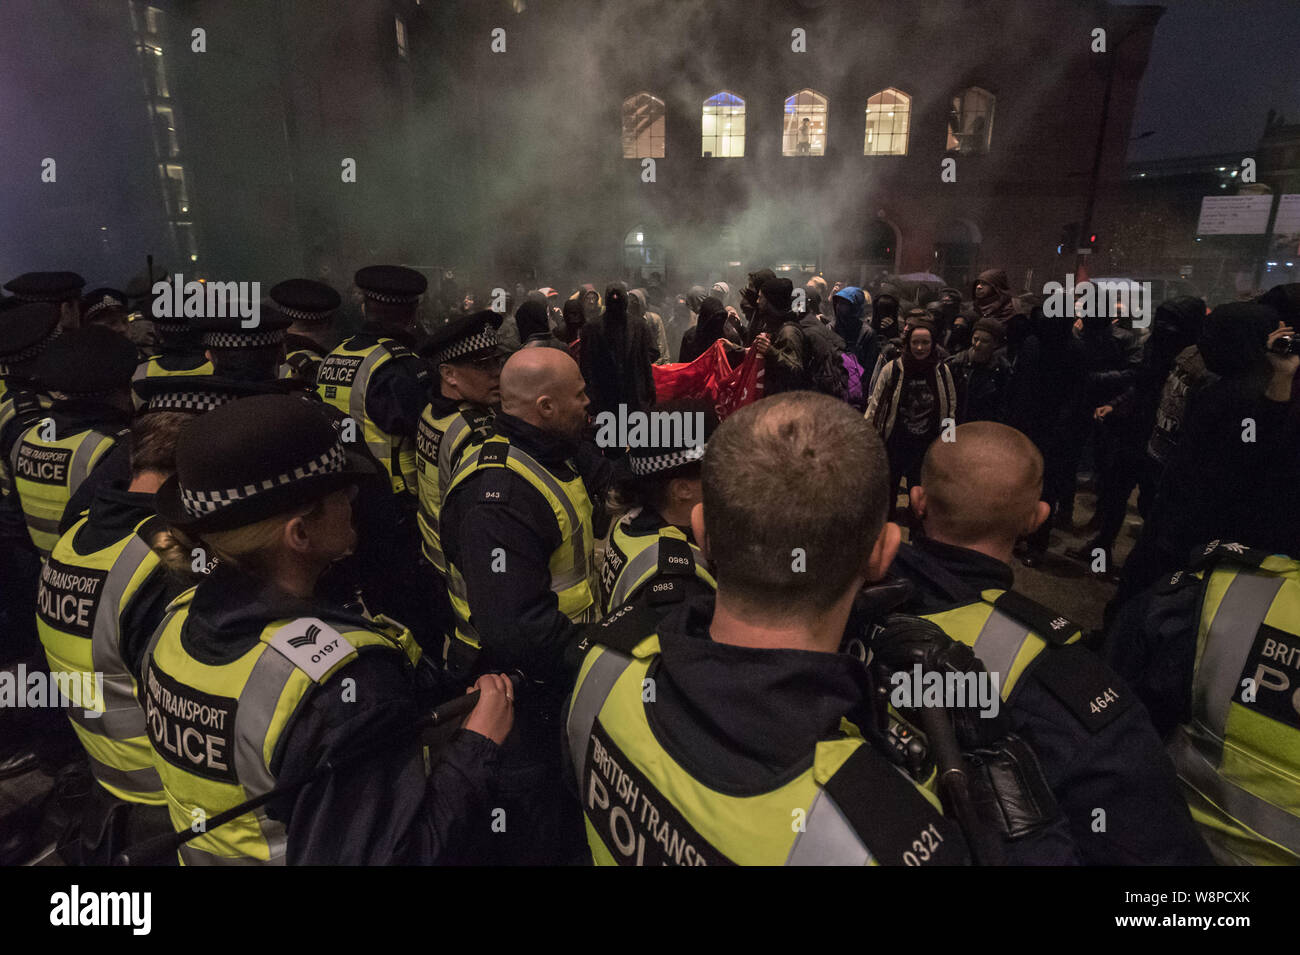 Londres, Royaume-Uni. 24 octobre, 2015. Jusqu'à 150 manifestants ont pris part à une manifestation à la gare St Pancras en réponse à la situation critique des femmes immigrantes Banque D'Images